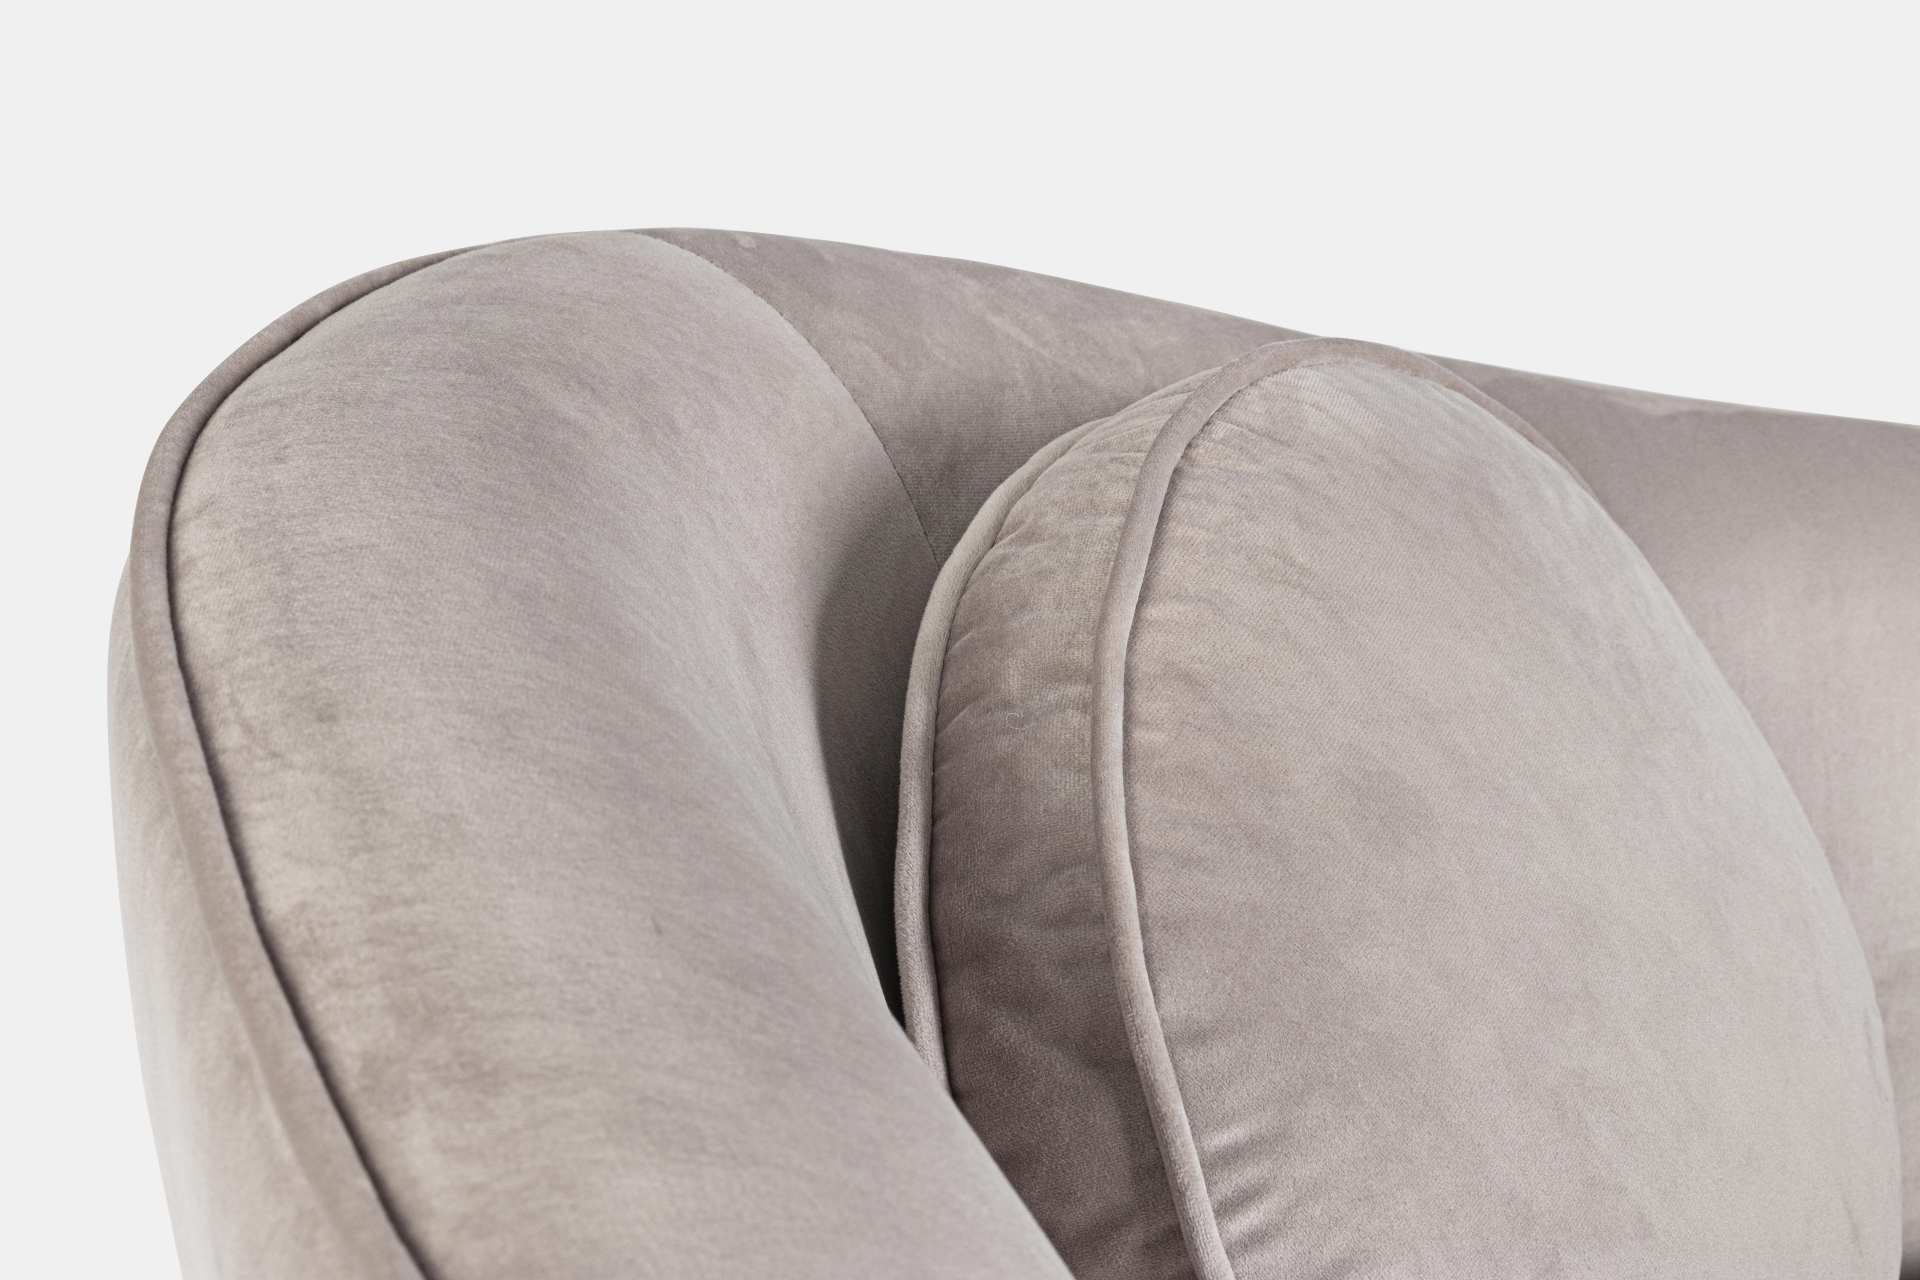 Das Sofa Candis überzeugt mit seinem modernen Design. Gefertigt wurde es aus Stoff in Samt-Optik, welcher einen hellgrauen Farbton besitzt. Das Gestell ist aus Metall und hat eine schwarze Farbe. Das Sofa ist in der Ausführung als 2-Sitzer. Die Breite bet